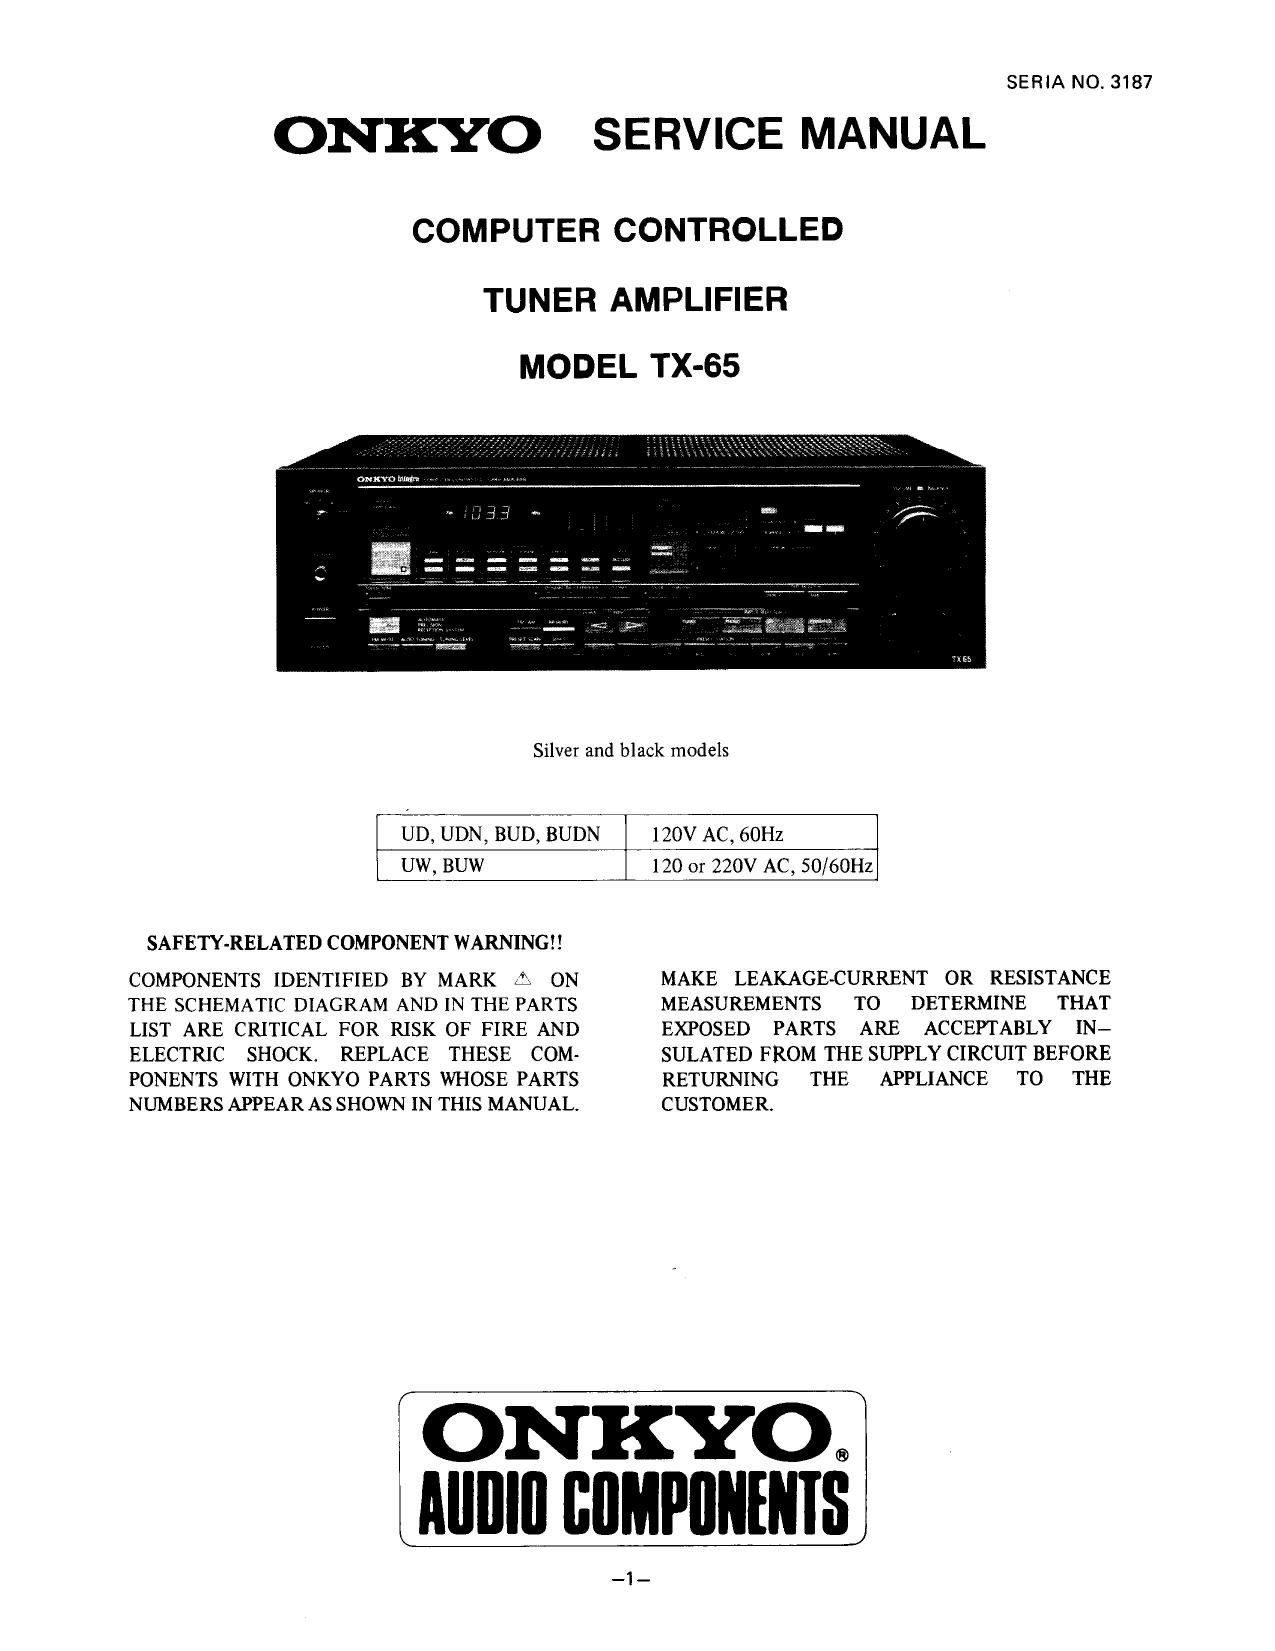 Onkyo TX 65 Service Manual